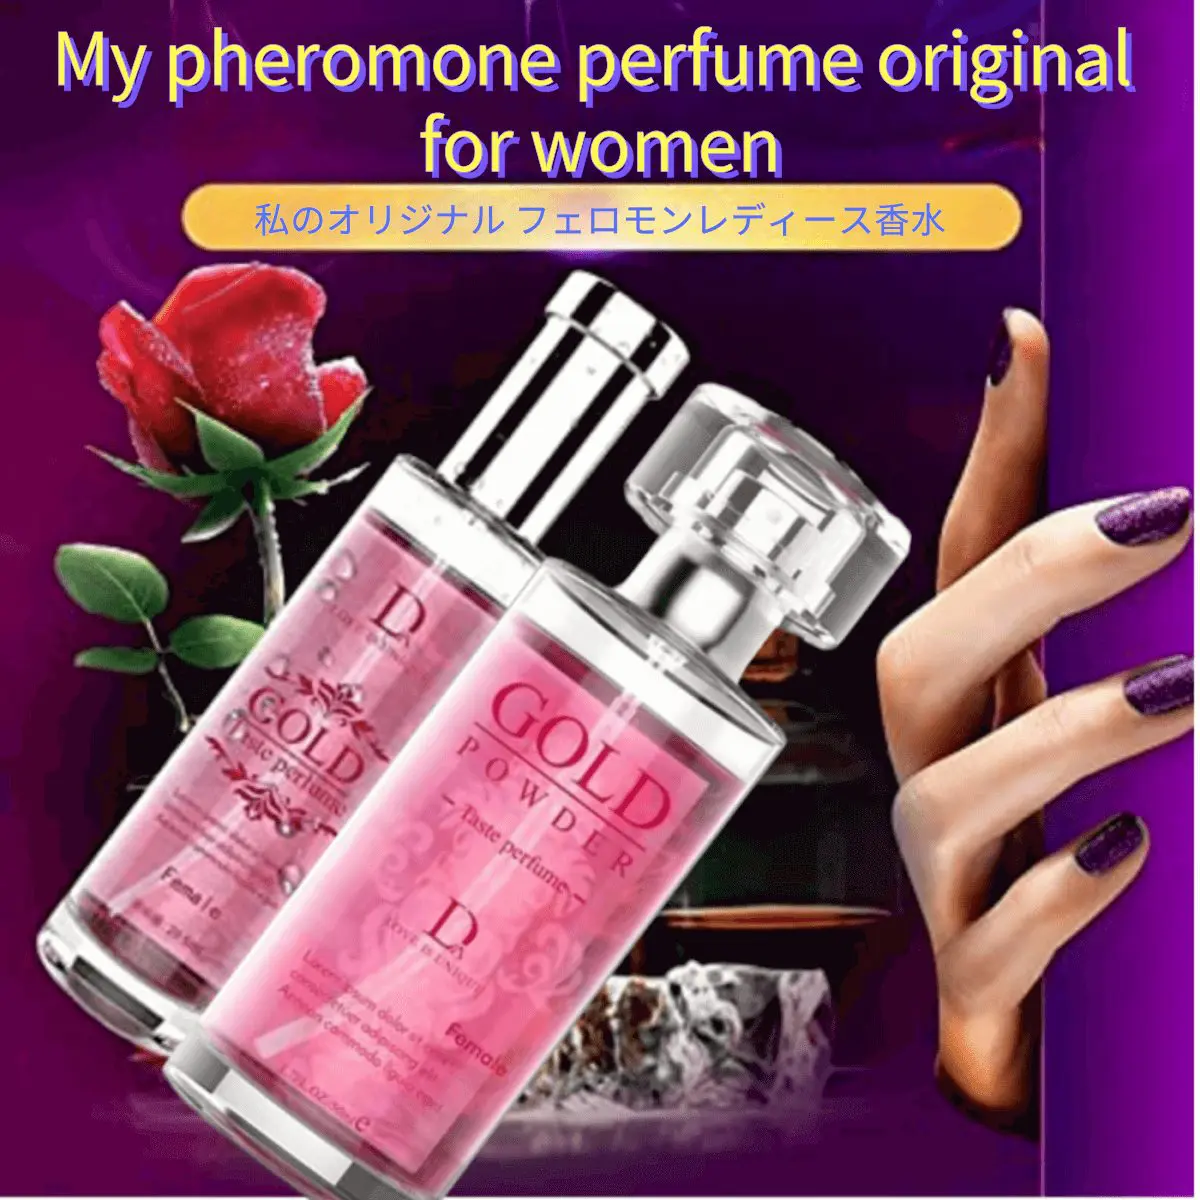 taboo perfume for women，my pheromone perfume original for womenperfumes for women，highest rated perfume for women，estuches de perfumes para mujer